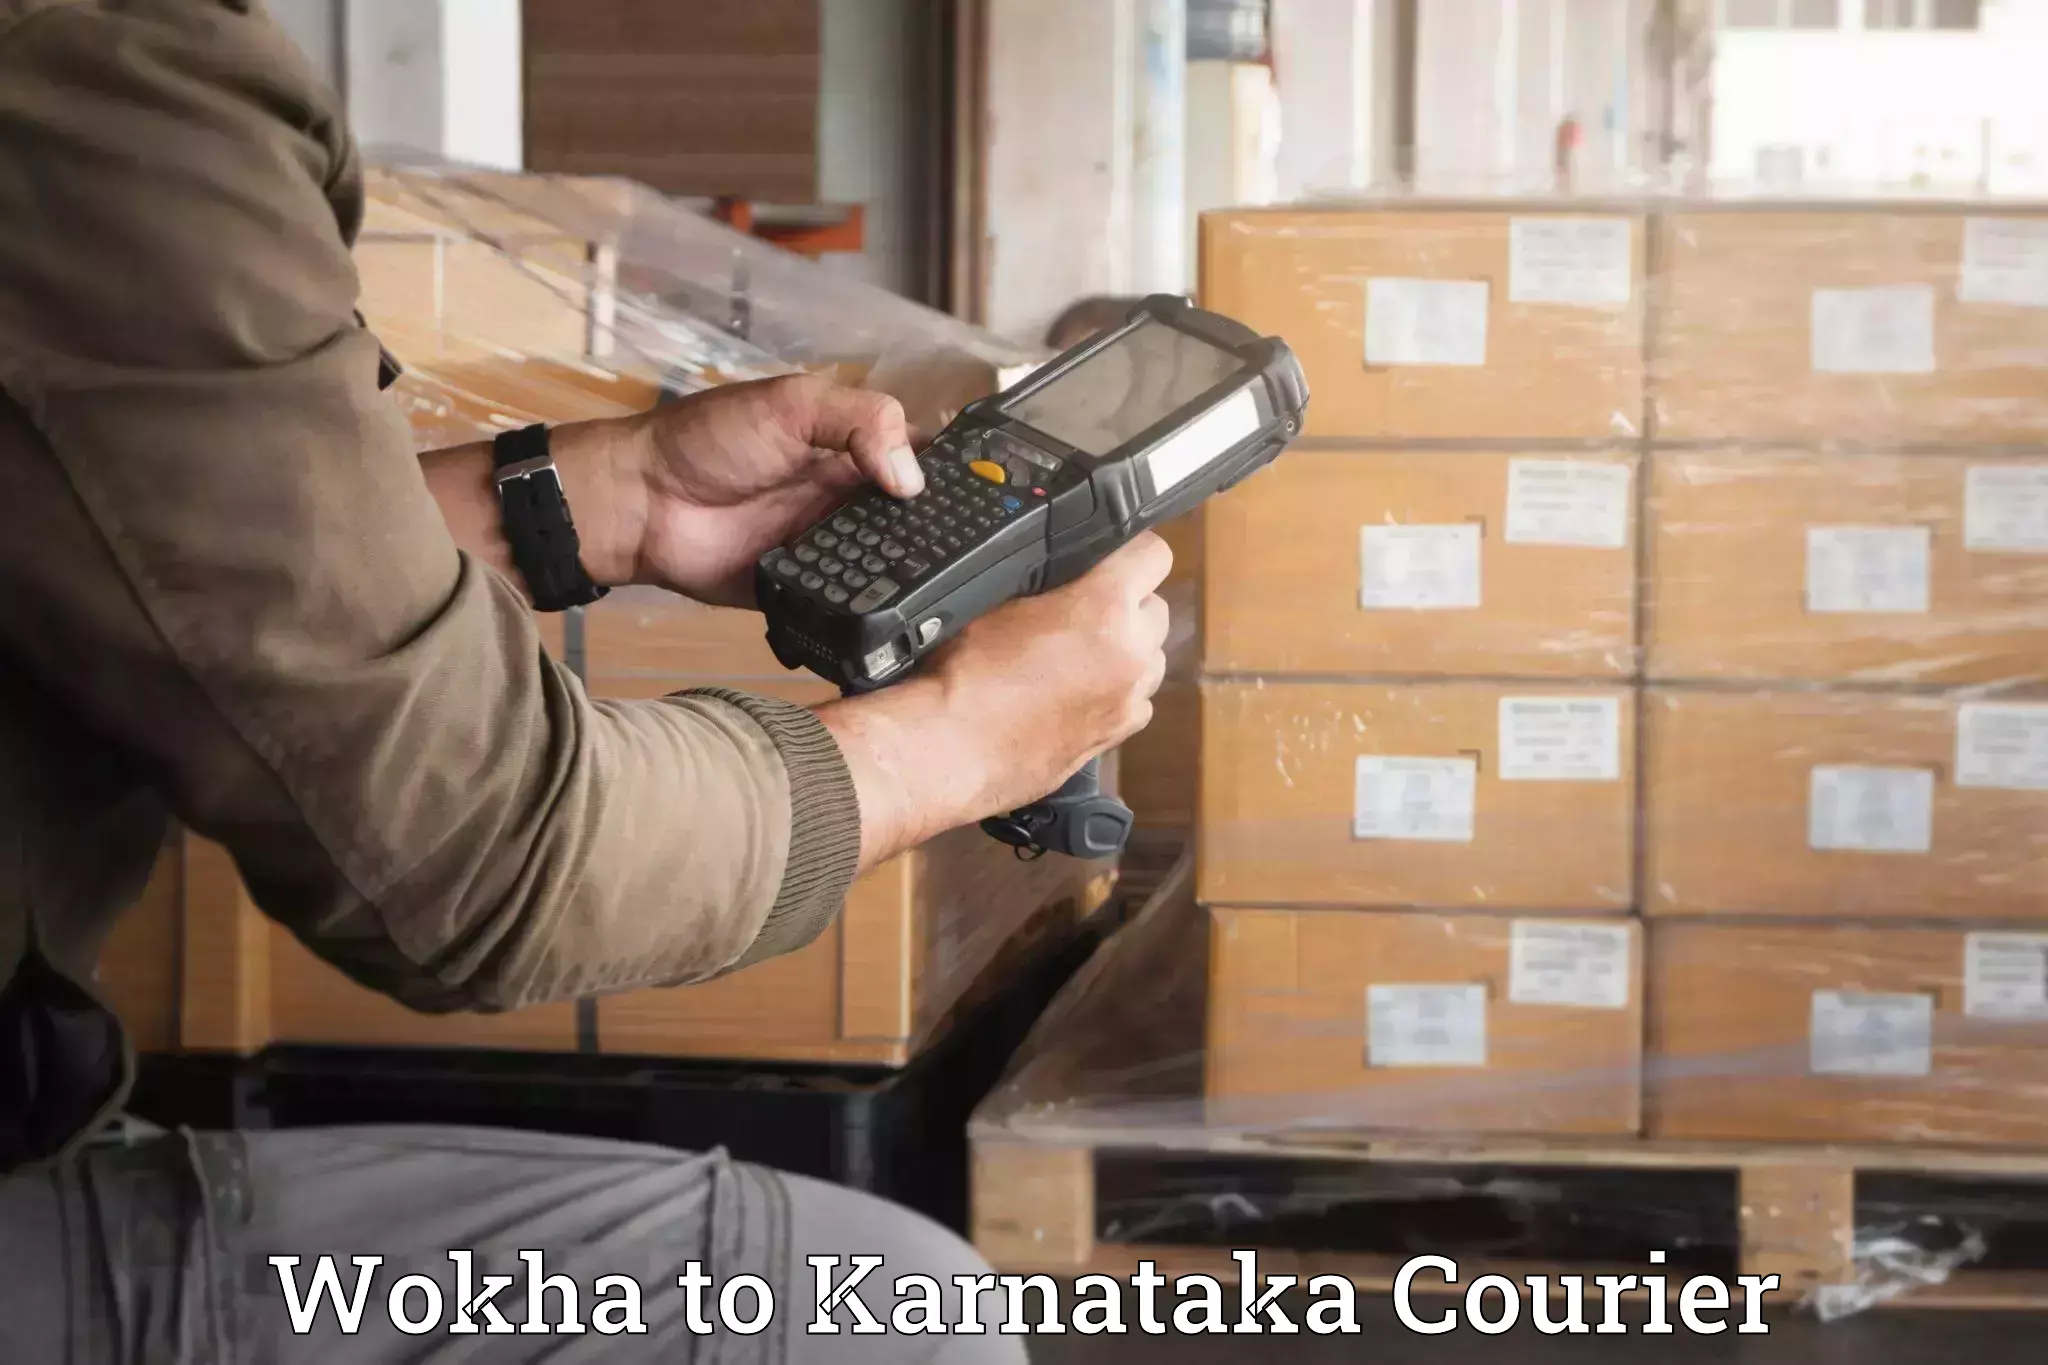 Professional packing services Wokha to Karnataka